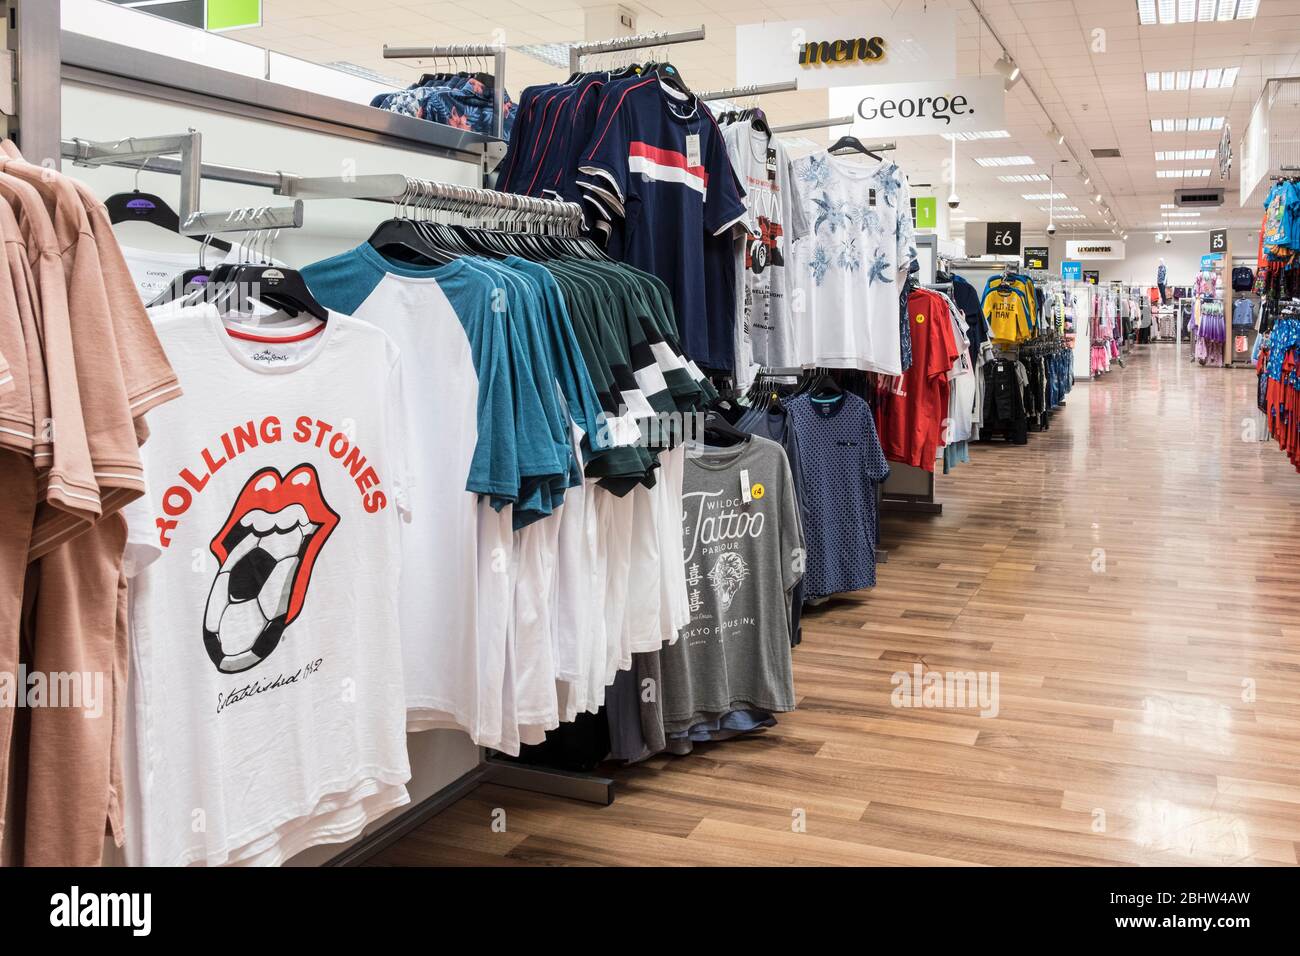 Supermercado Asda Sección de ropa interior, ropa Marca George Fotografía de - Alamy